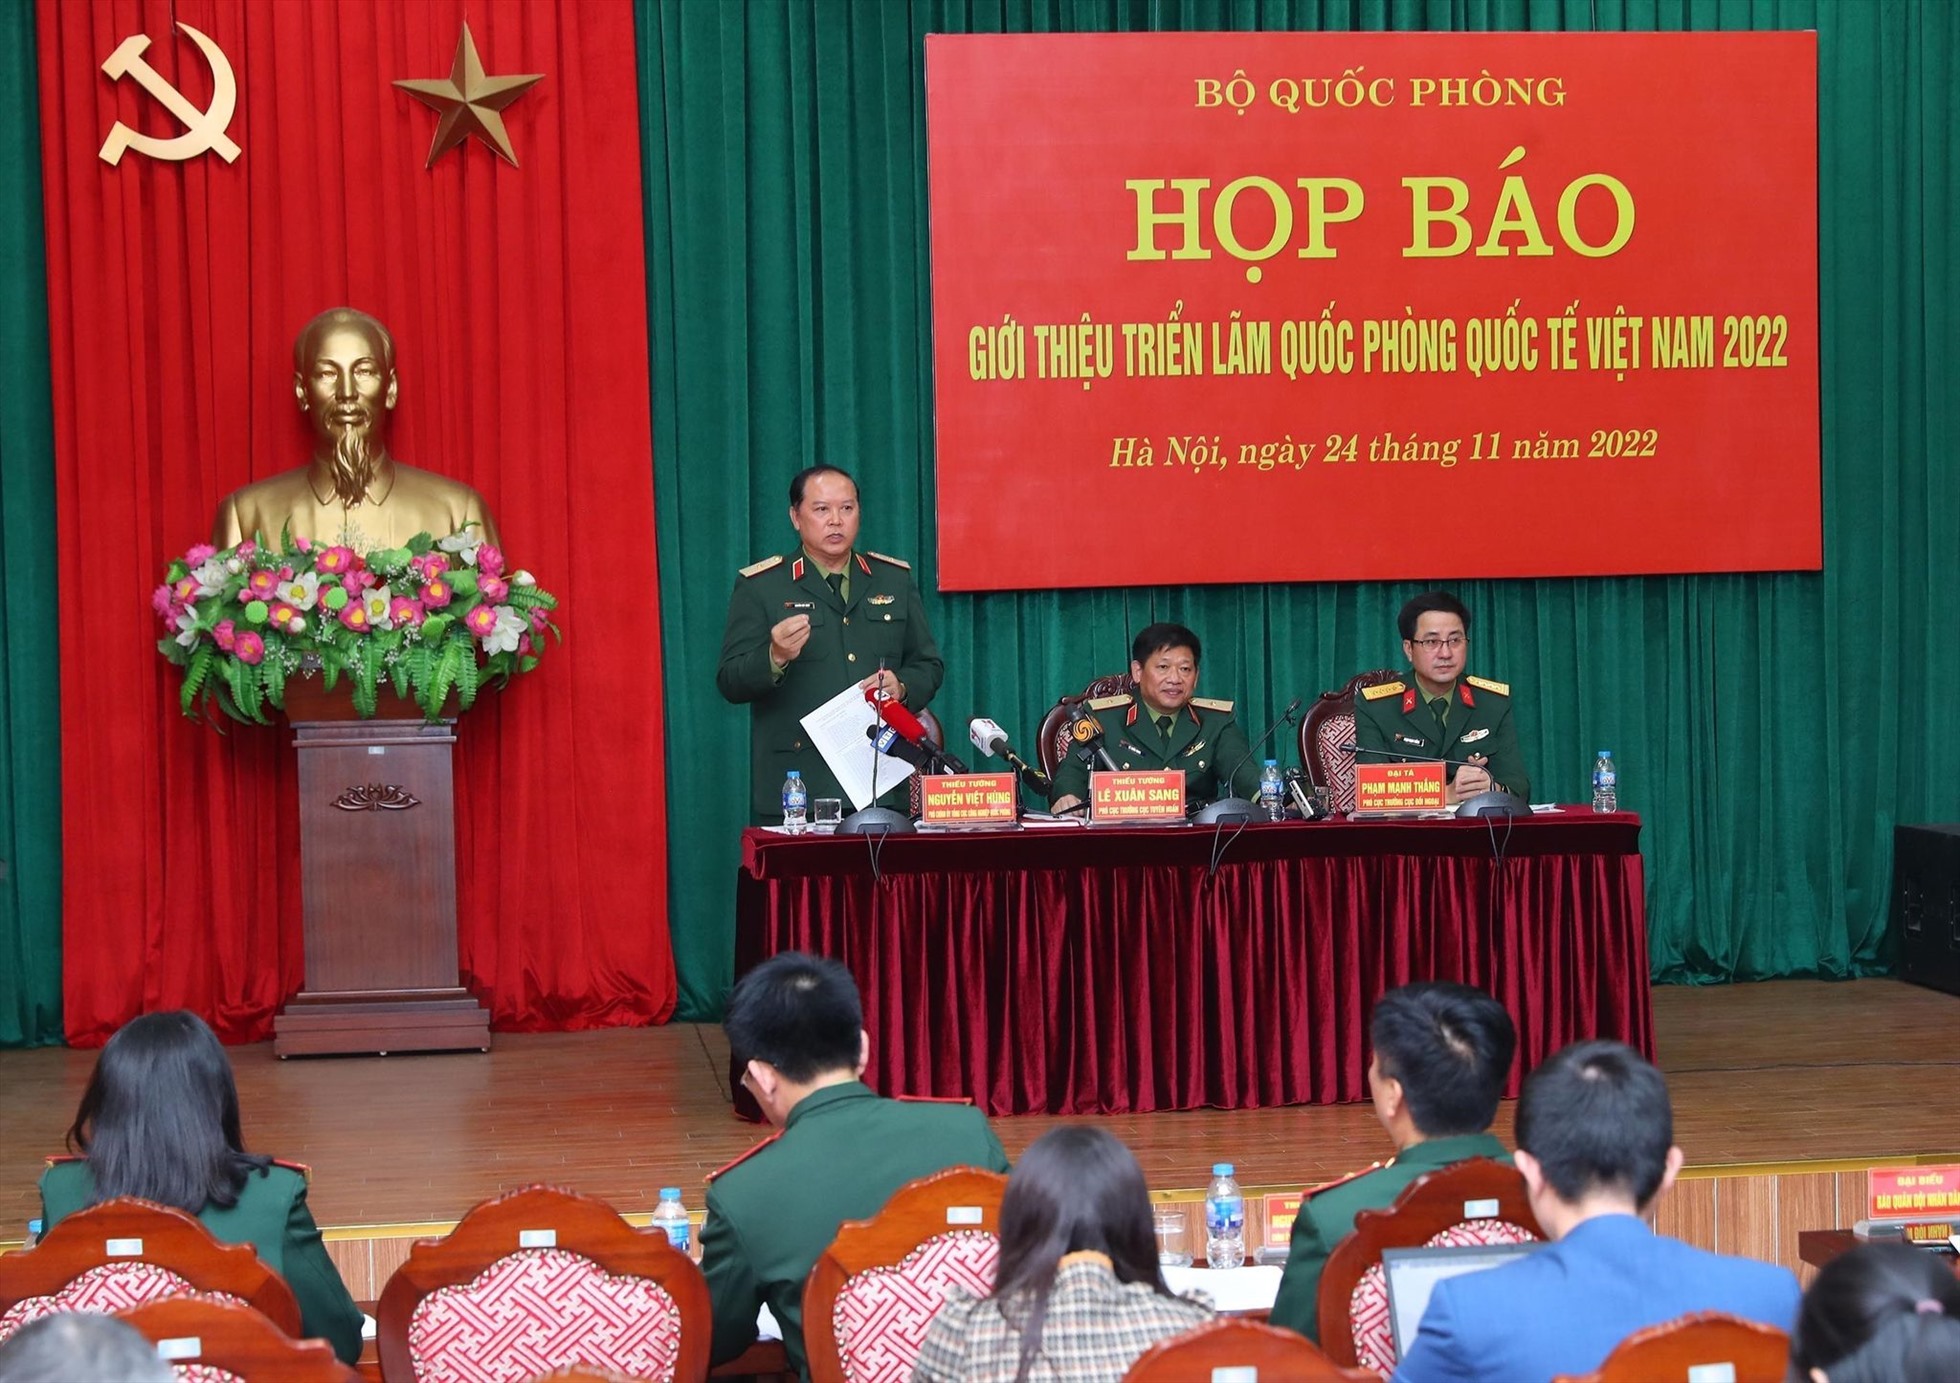 Thiếu tướng Nguyễn Việt Hùng - Phó Chính uỷ Tổng cục Công nghiệp Quốc phòng trao đổi tại họp báo. Ảnh: T.Vương